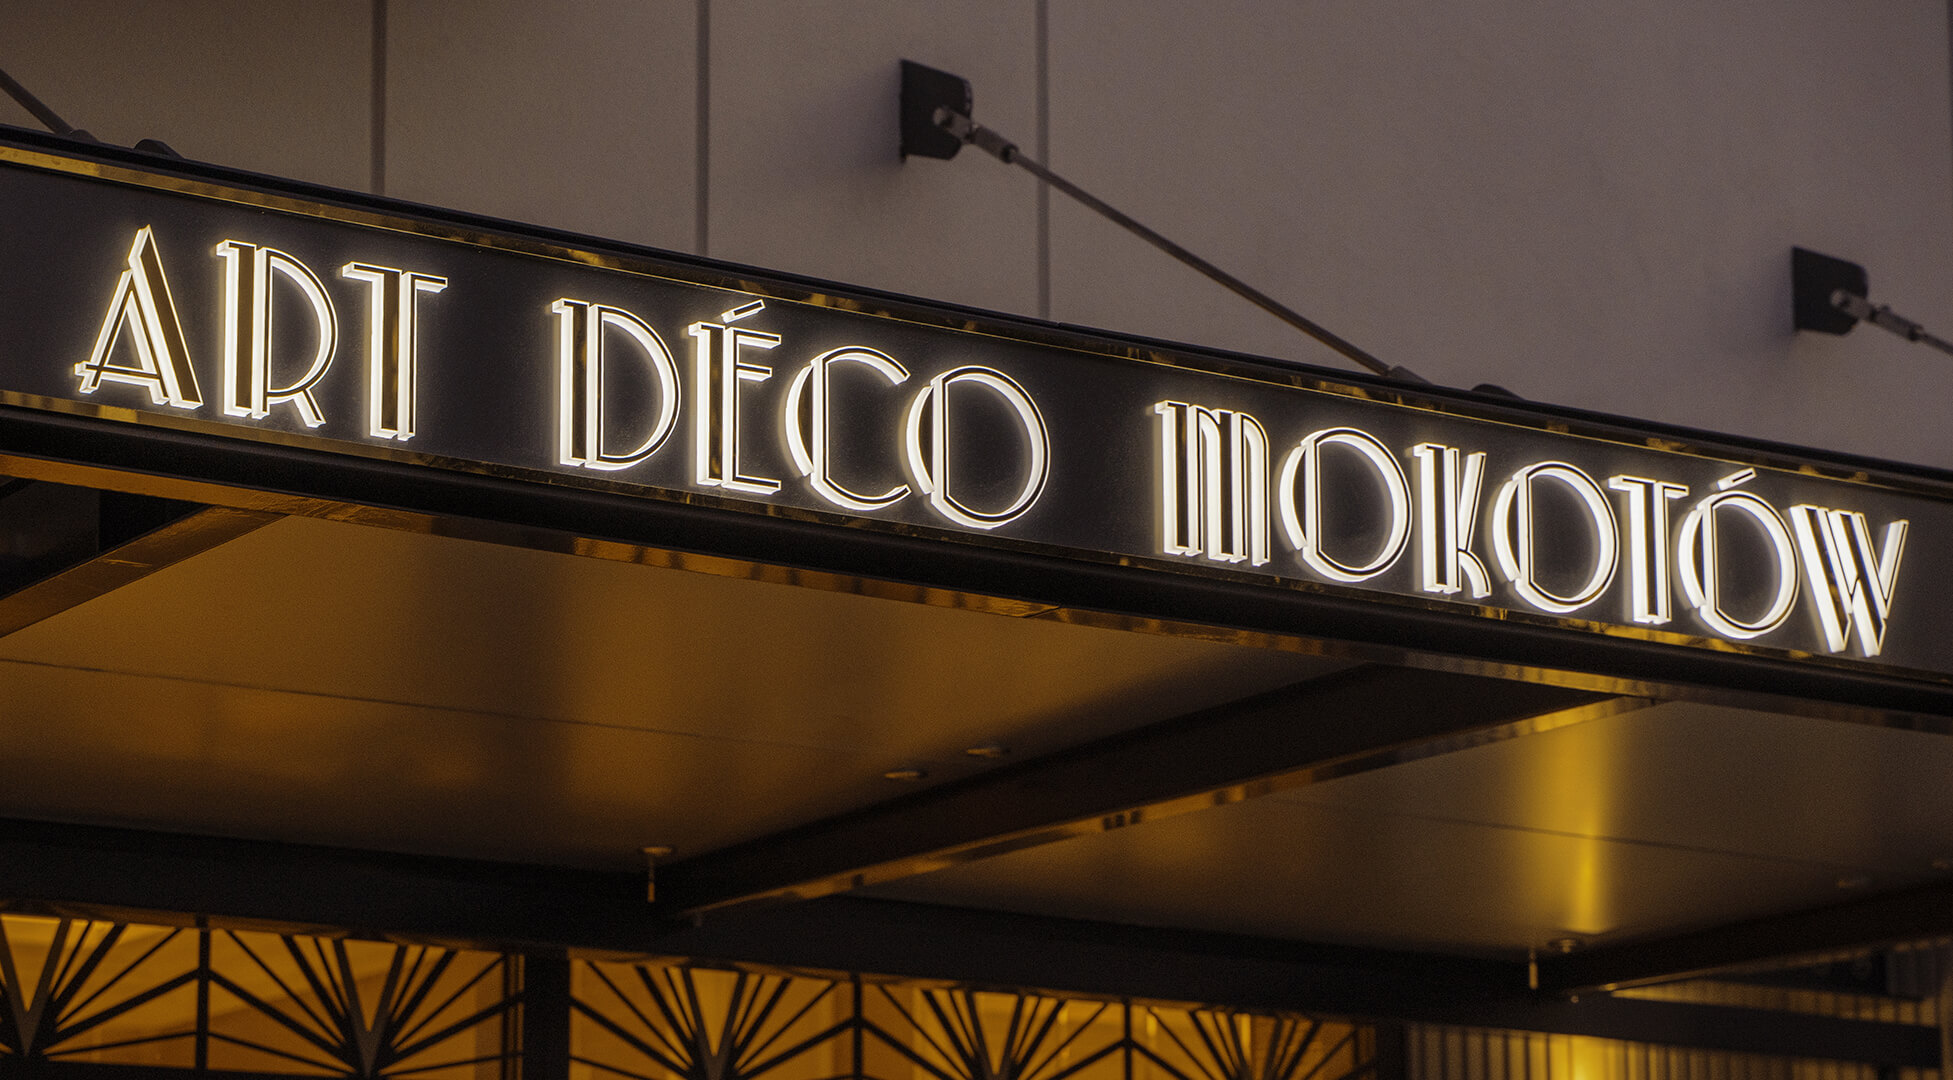 Art Deco Mokotów - Kaseton z dibondu w kolorze złotym nad wejściem Art Deco Mokotów, podświetlane LED.